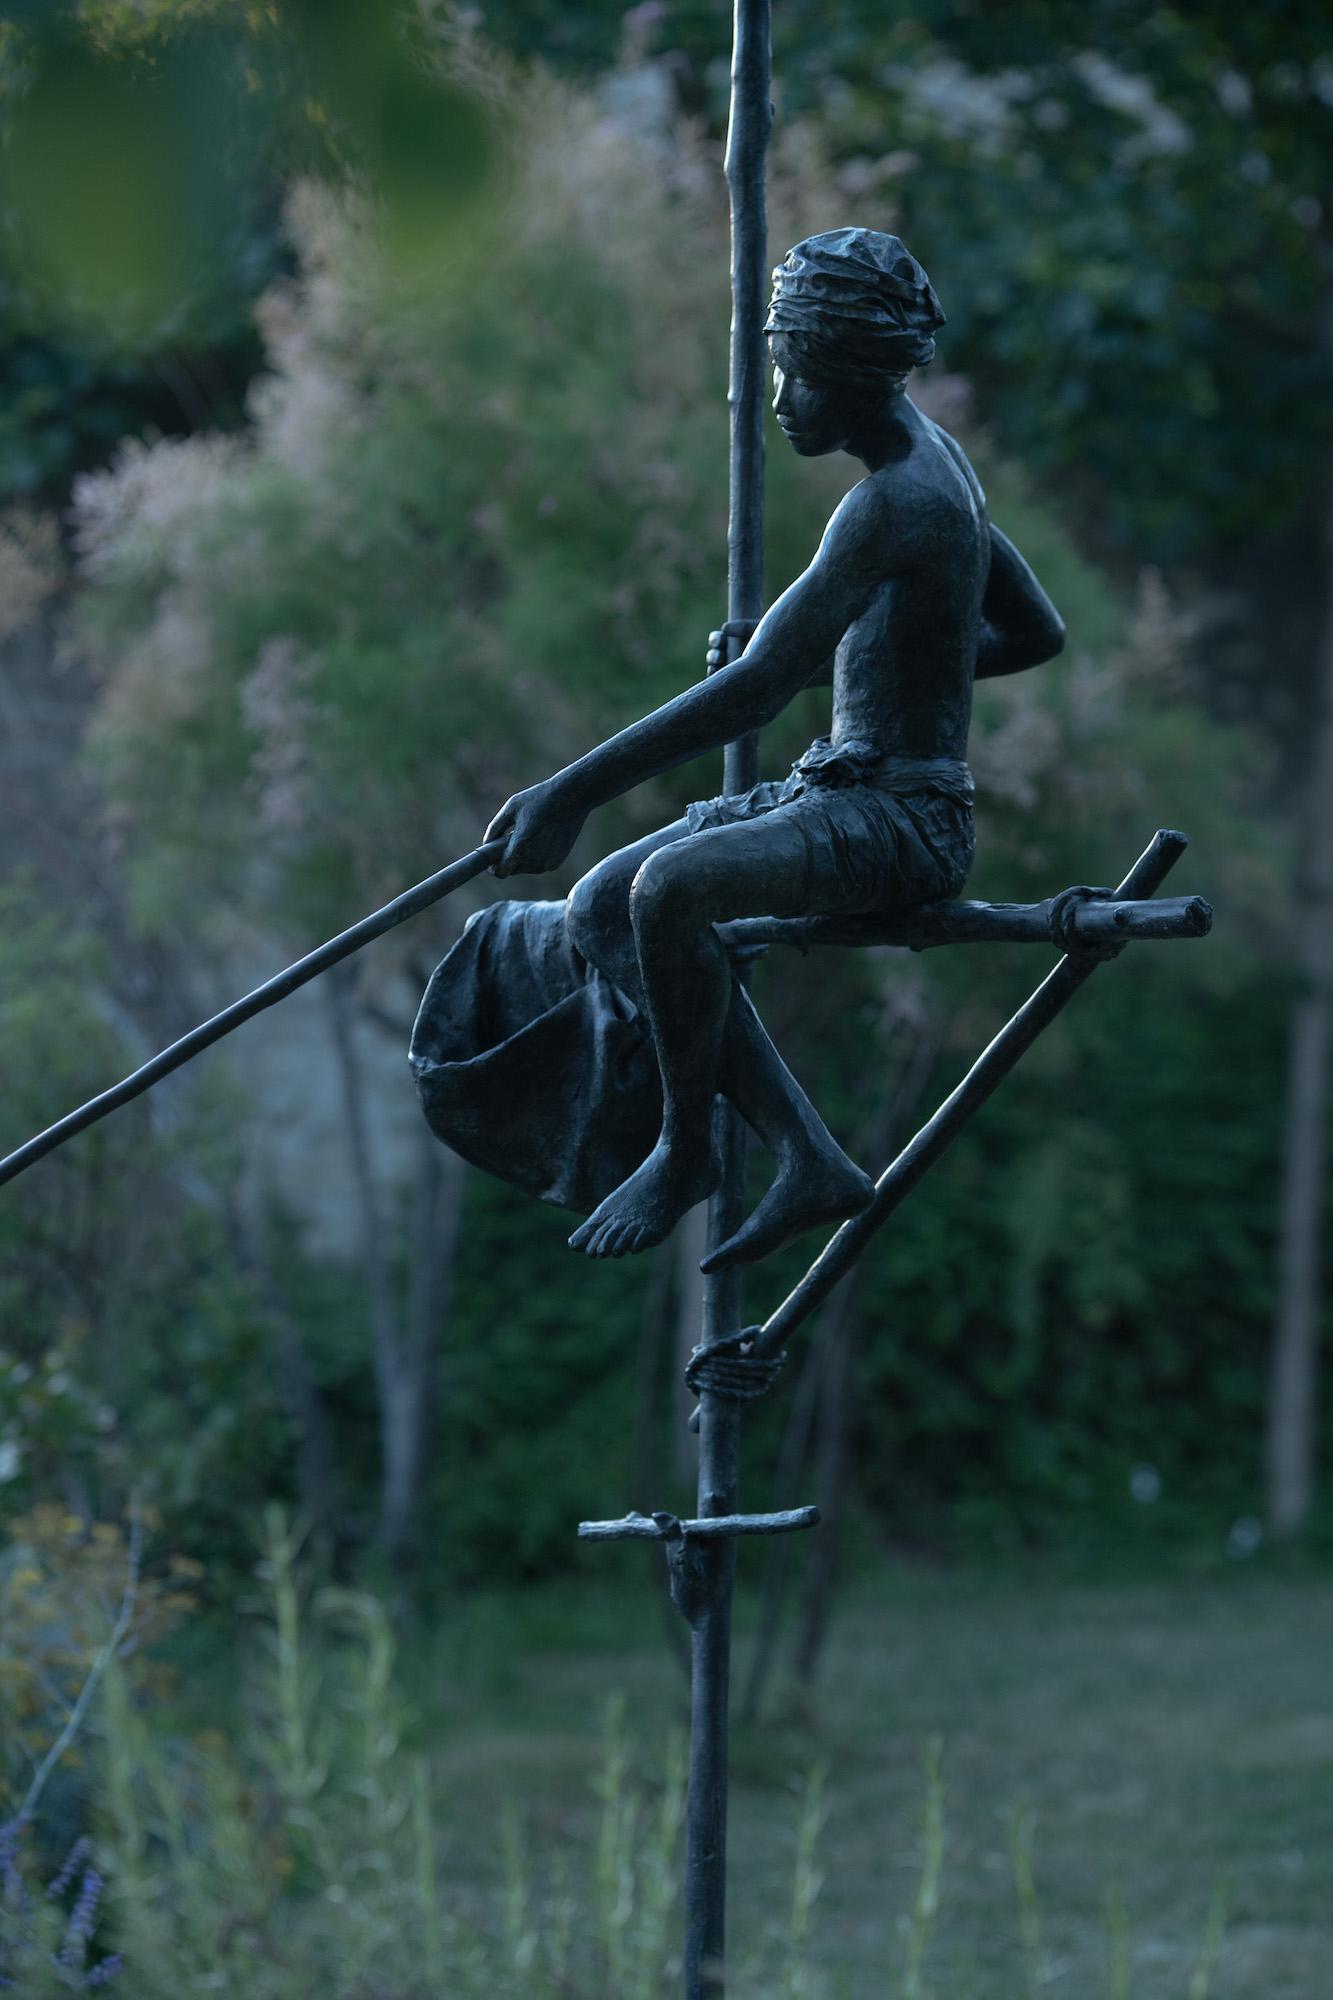 Fisherman on Stilt ist eine großformatige Skulptur der französischen Künstlerin Marine de Soos.  Bronze, 253 cm × 126 cm × 175 cm.
Jede der Skulpturen von Marine de Soos hat ihre eigene Geschichte, sie ist eine Erinnerung an einen realen Moment oder